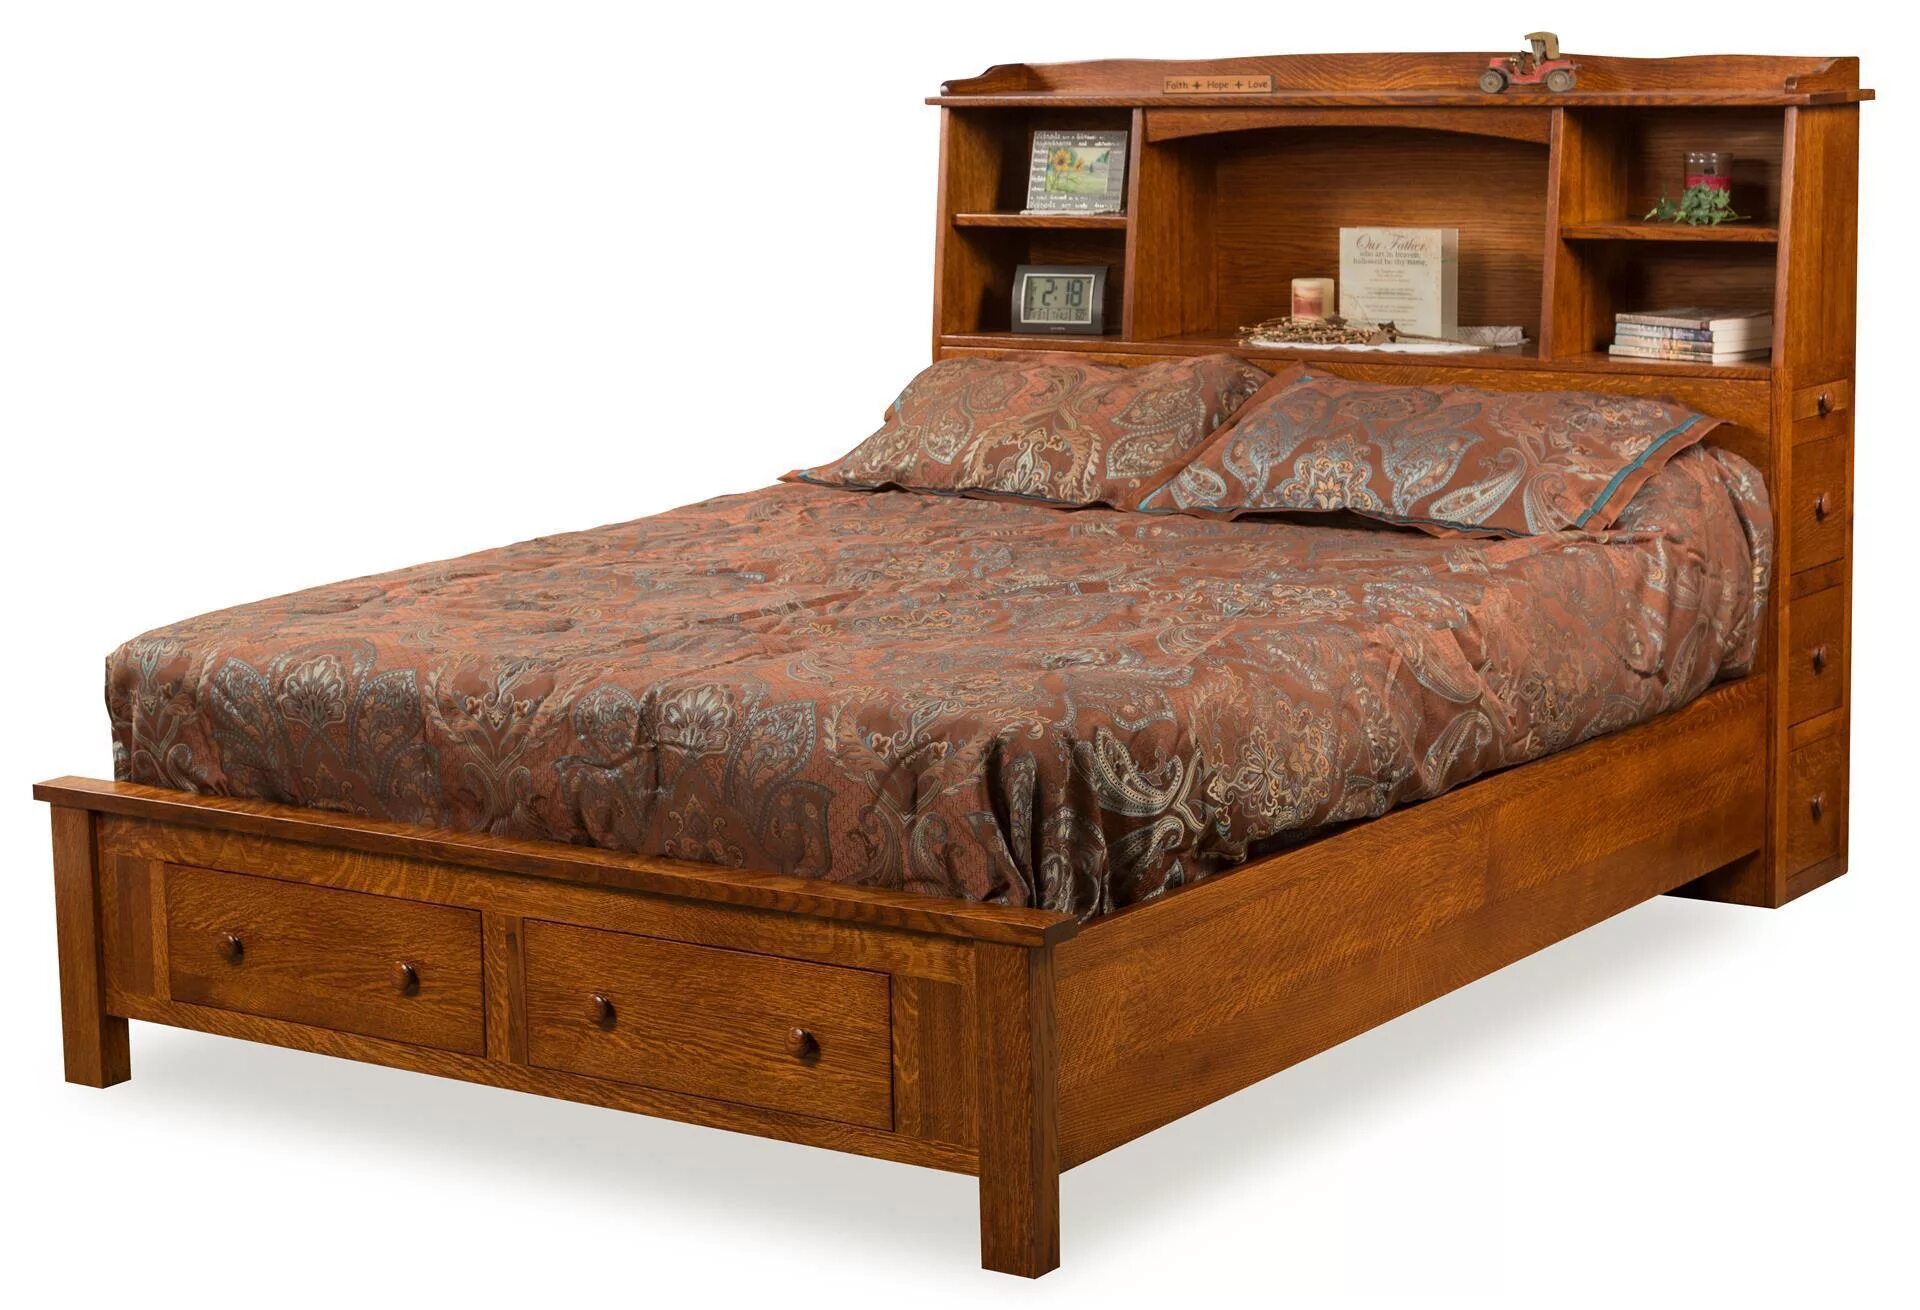 Двуспальные кровати с полкой. Деревянная кровать с полками. Деревянная кровать с полочками. Кровать двуспальная деревянная с полками. Деревянная кровать с полками в изголовье.